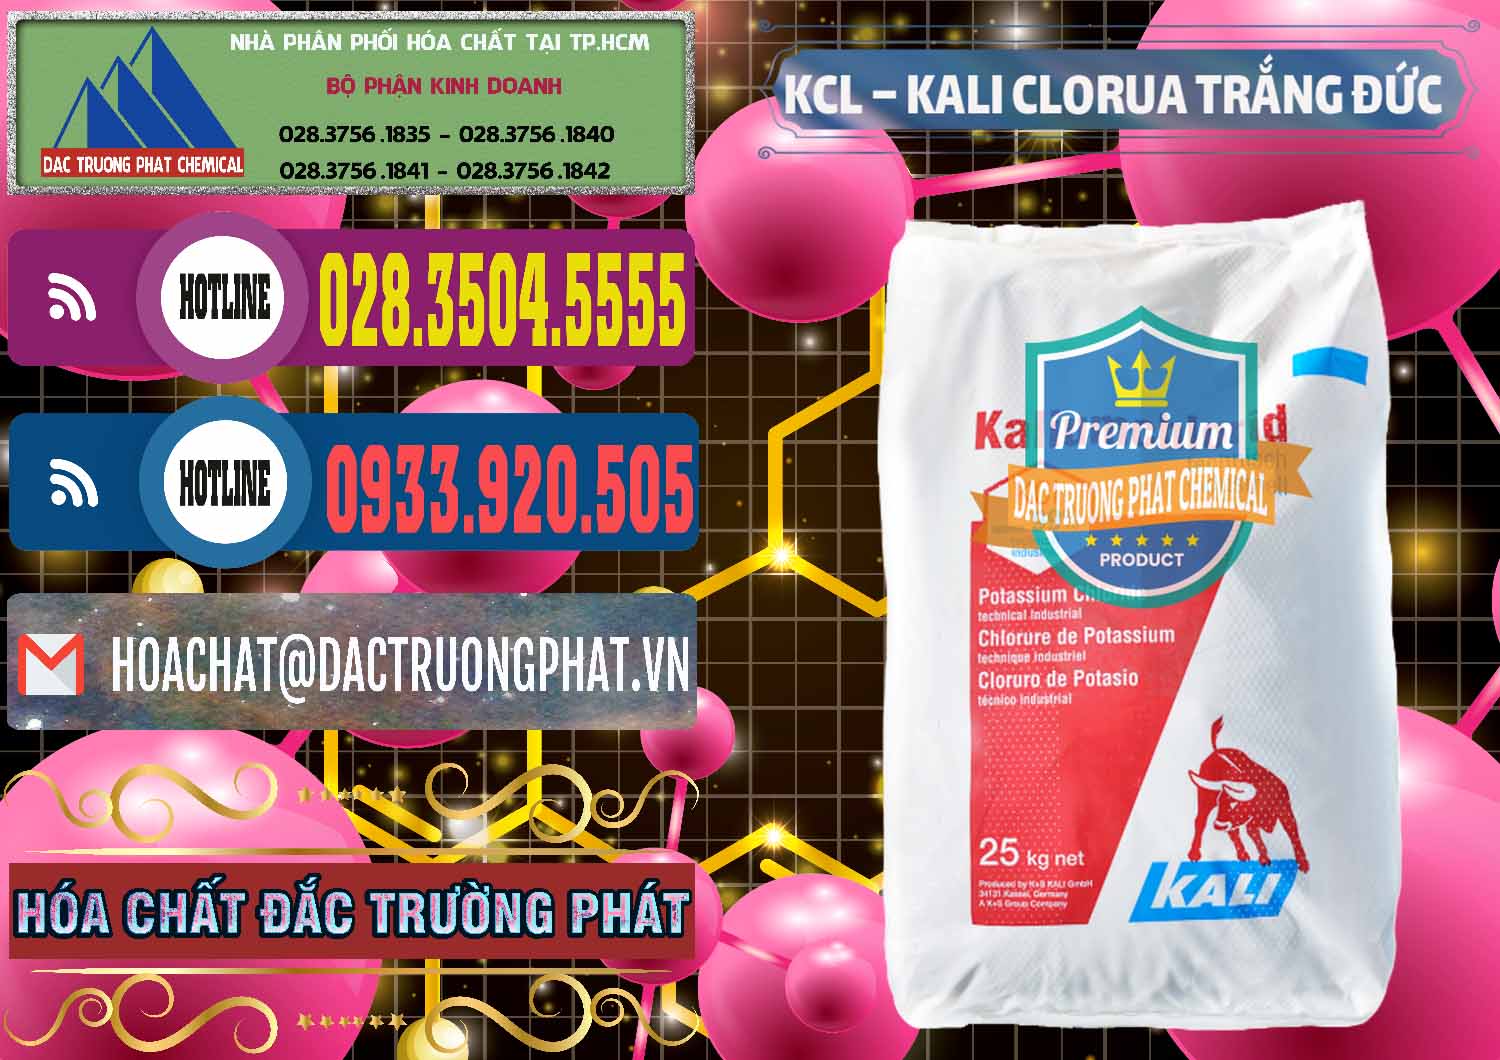 Chuyên nhập khẩu và bán KCL – Kali Clorua Trắng Đức Germany - 0086 - Nhà phân phối và bán hóa chất tại TP.HCM - muabanhoachat.com.vn